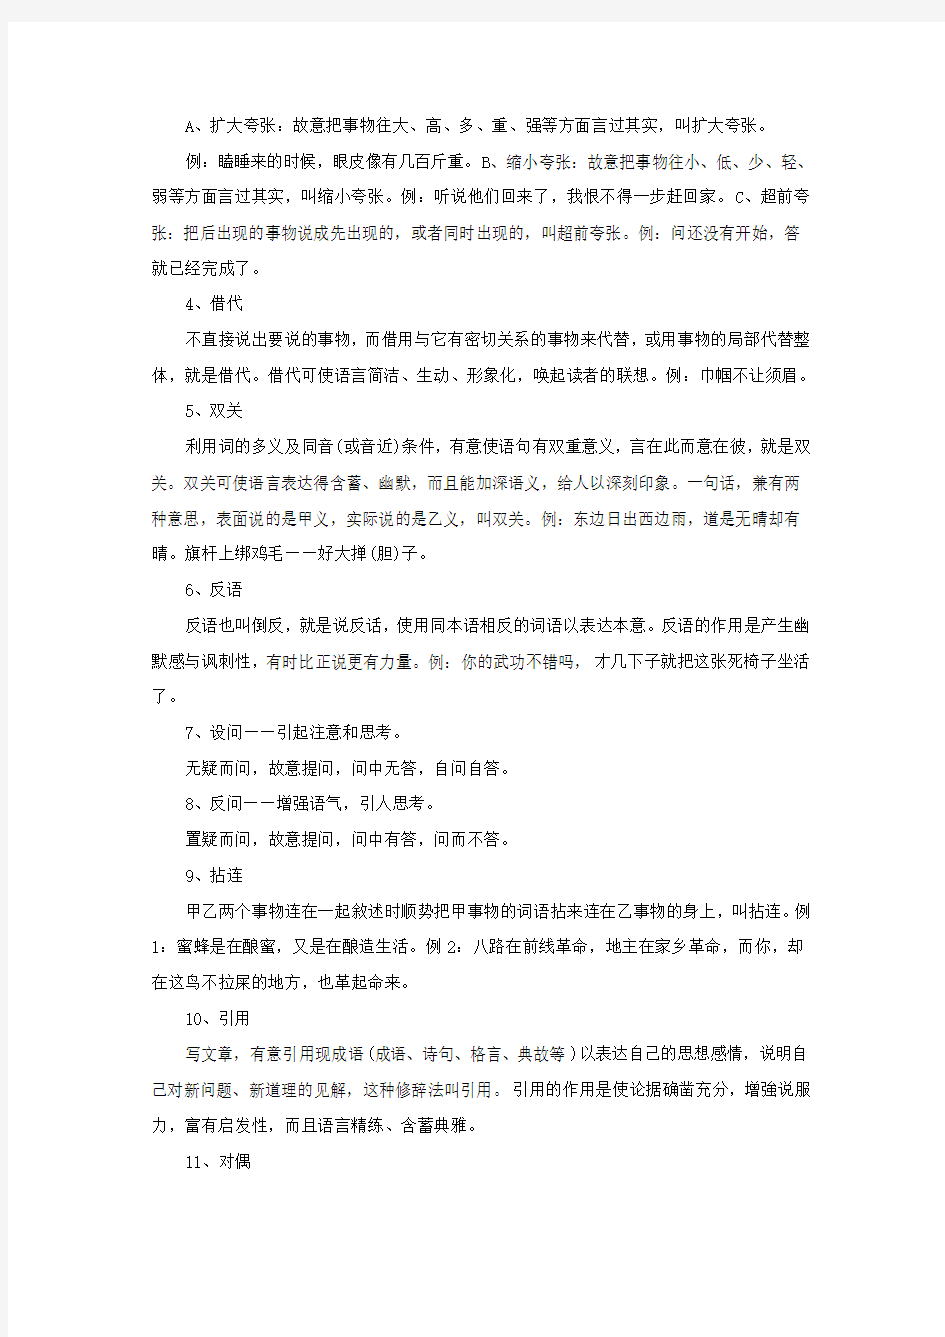 2014年湖南公务员考试职位表下载